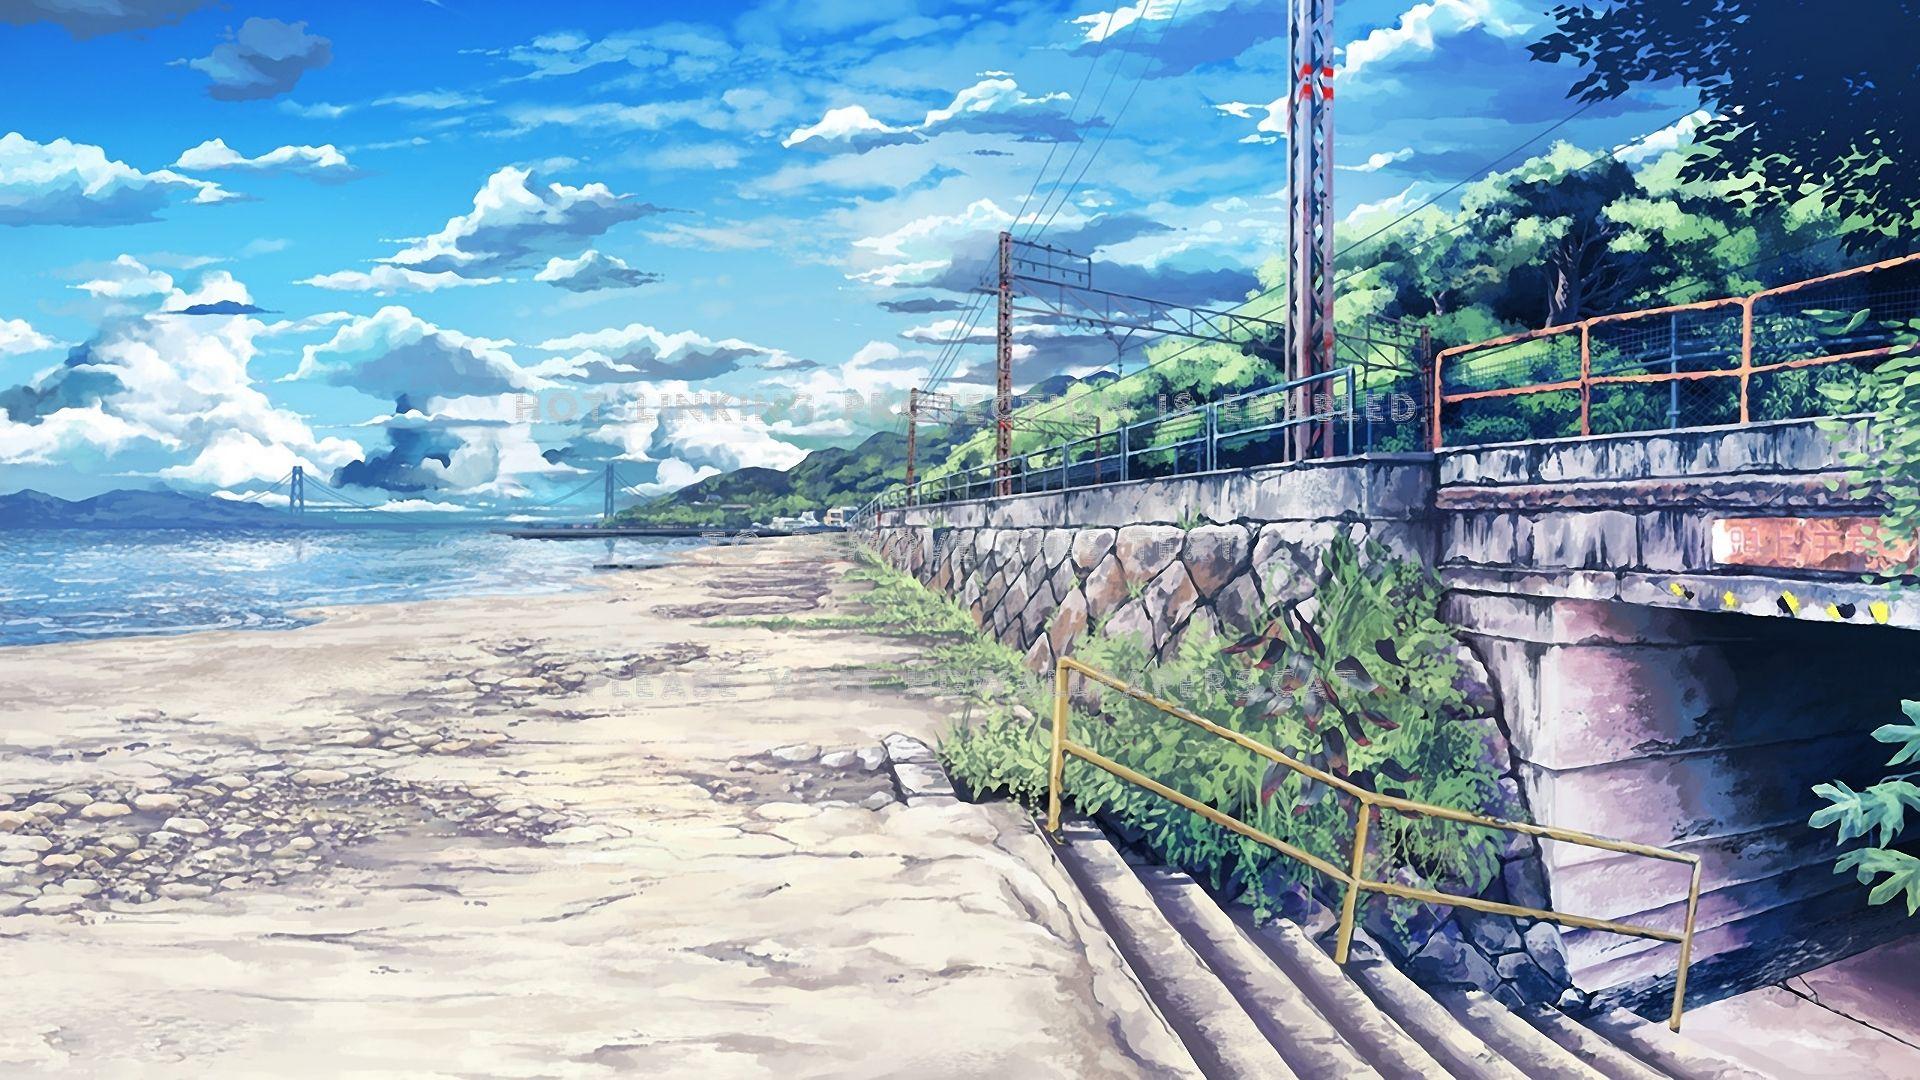 Anime Beach HD Wallpapers Free Download - PixelsTalk.Net